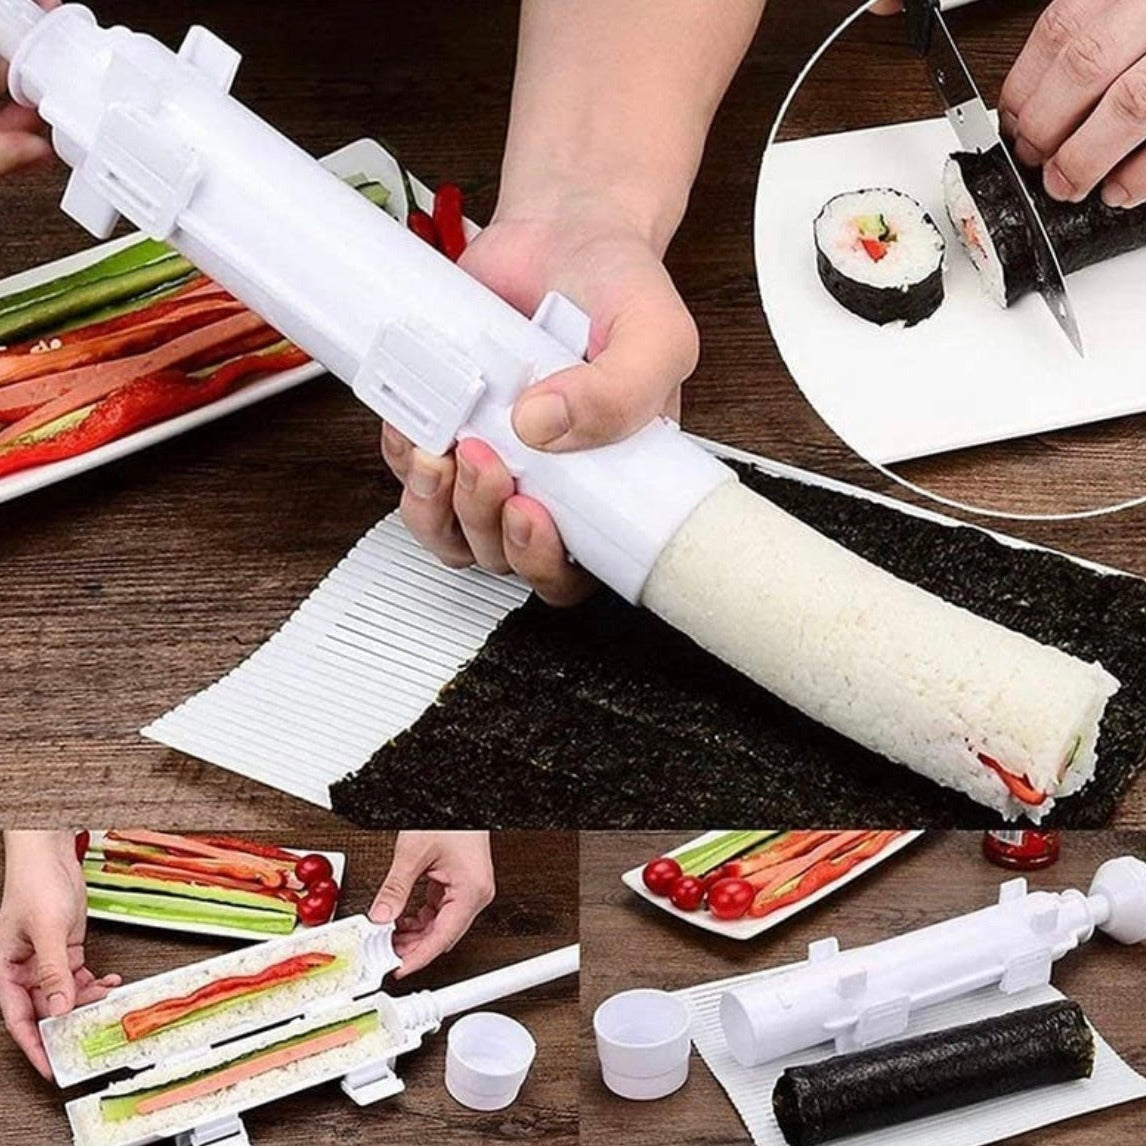 😳 Me compre una máquina para hacer sushi 😭😭 y funciona 10/10 😍😍… 